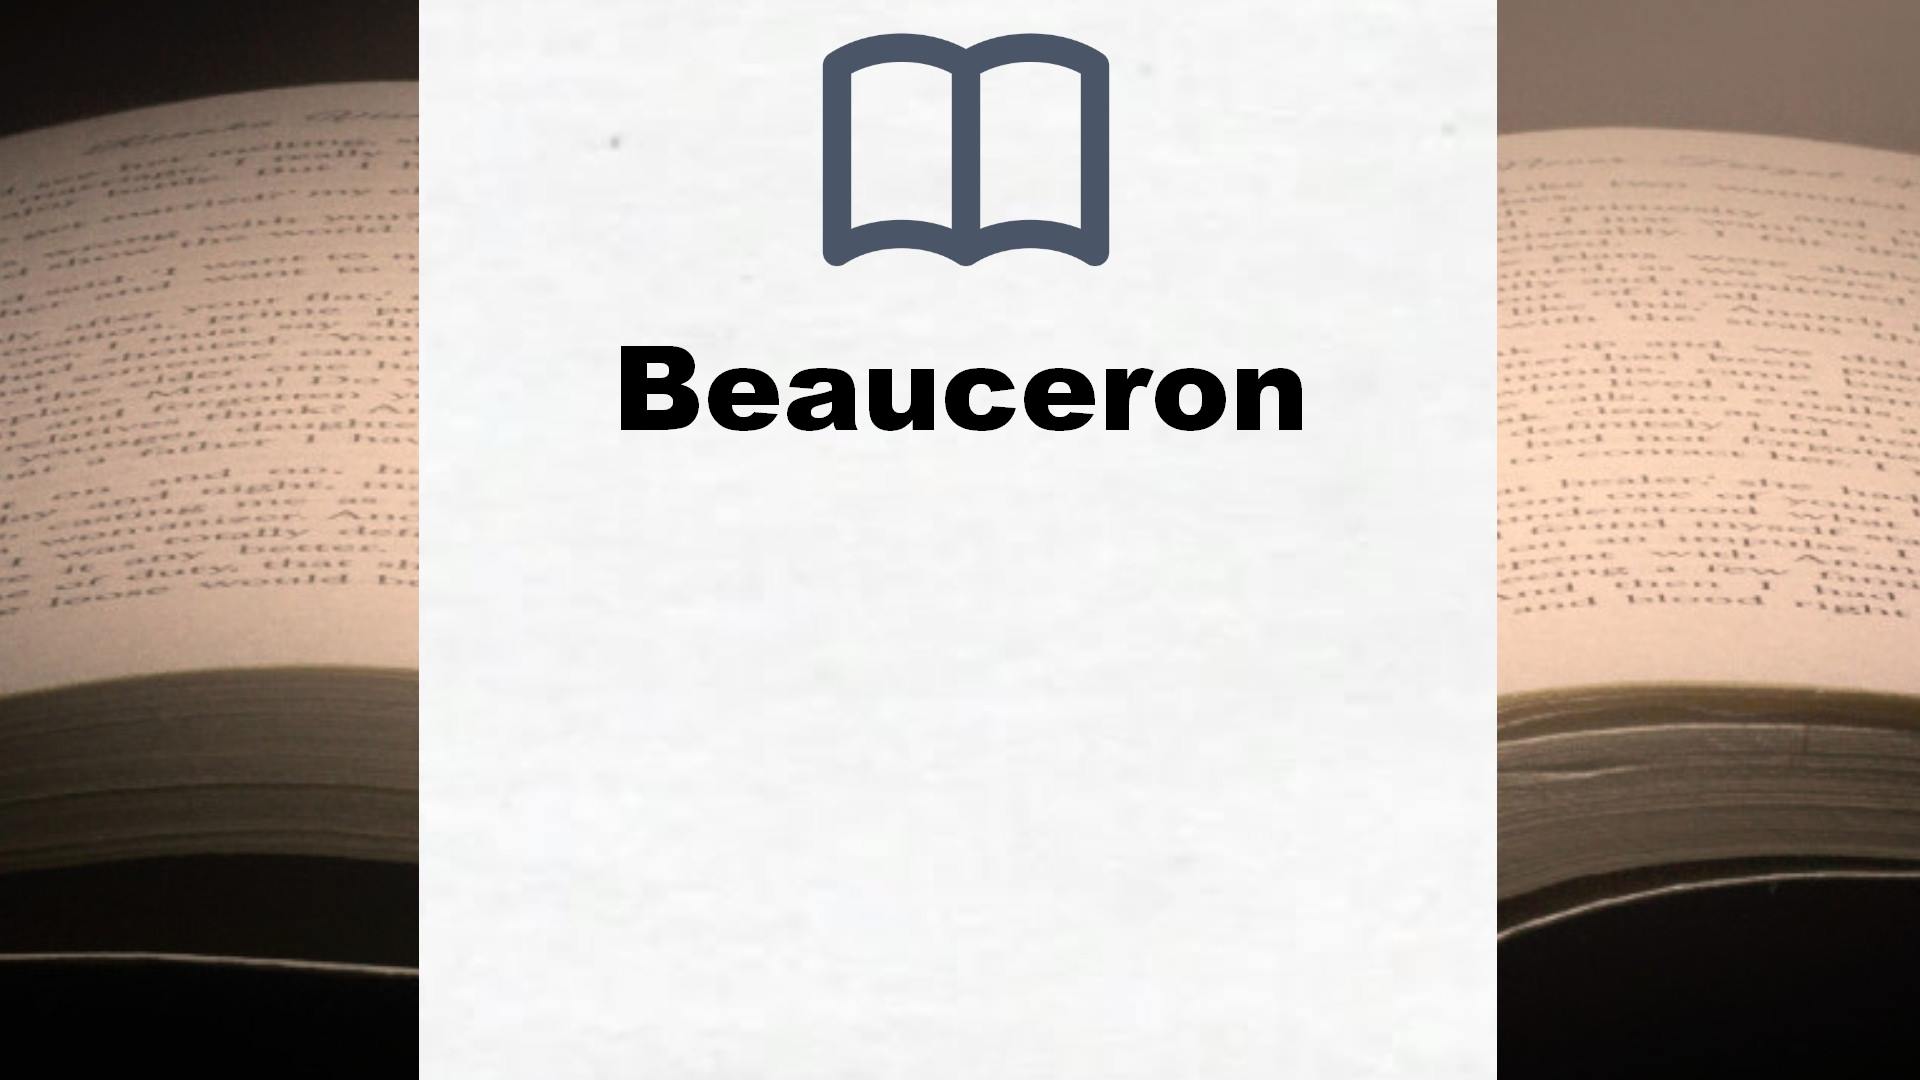 Bücher über Beauceron